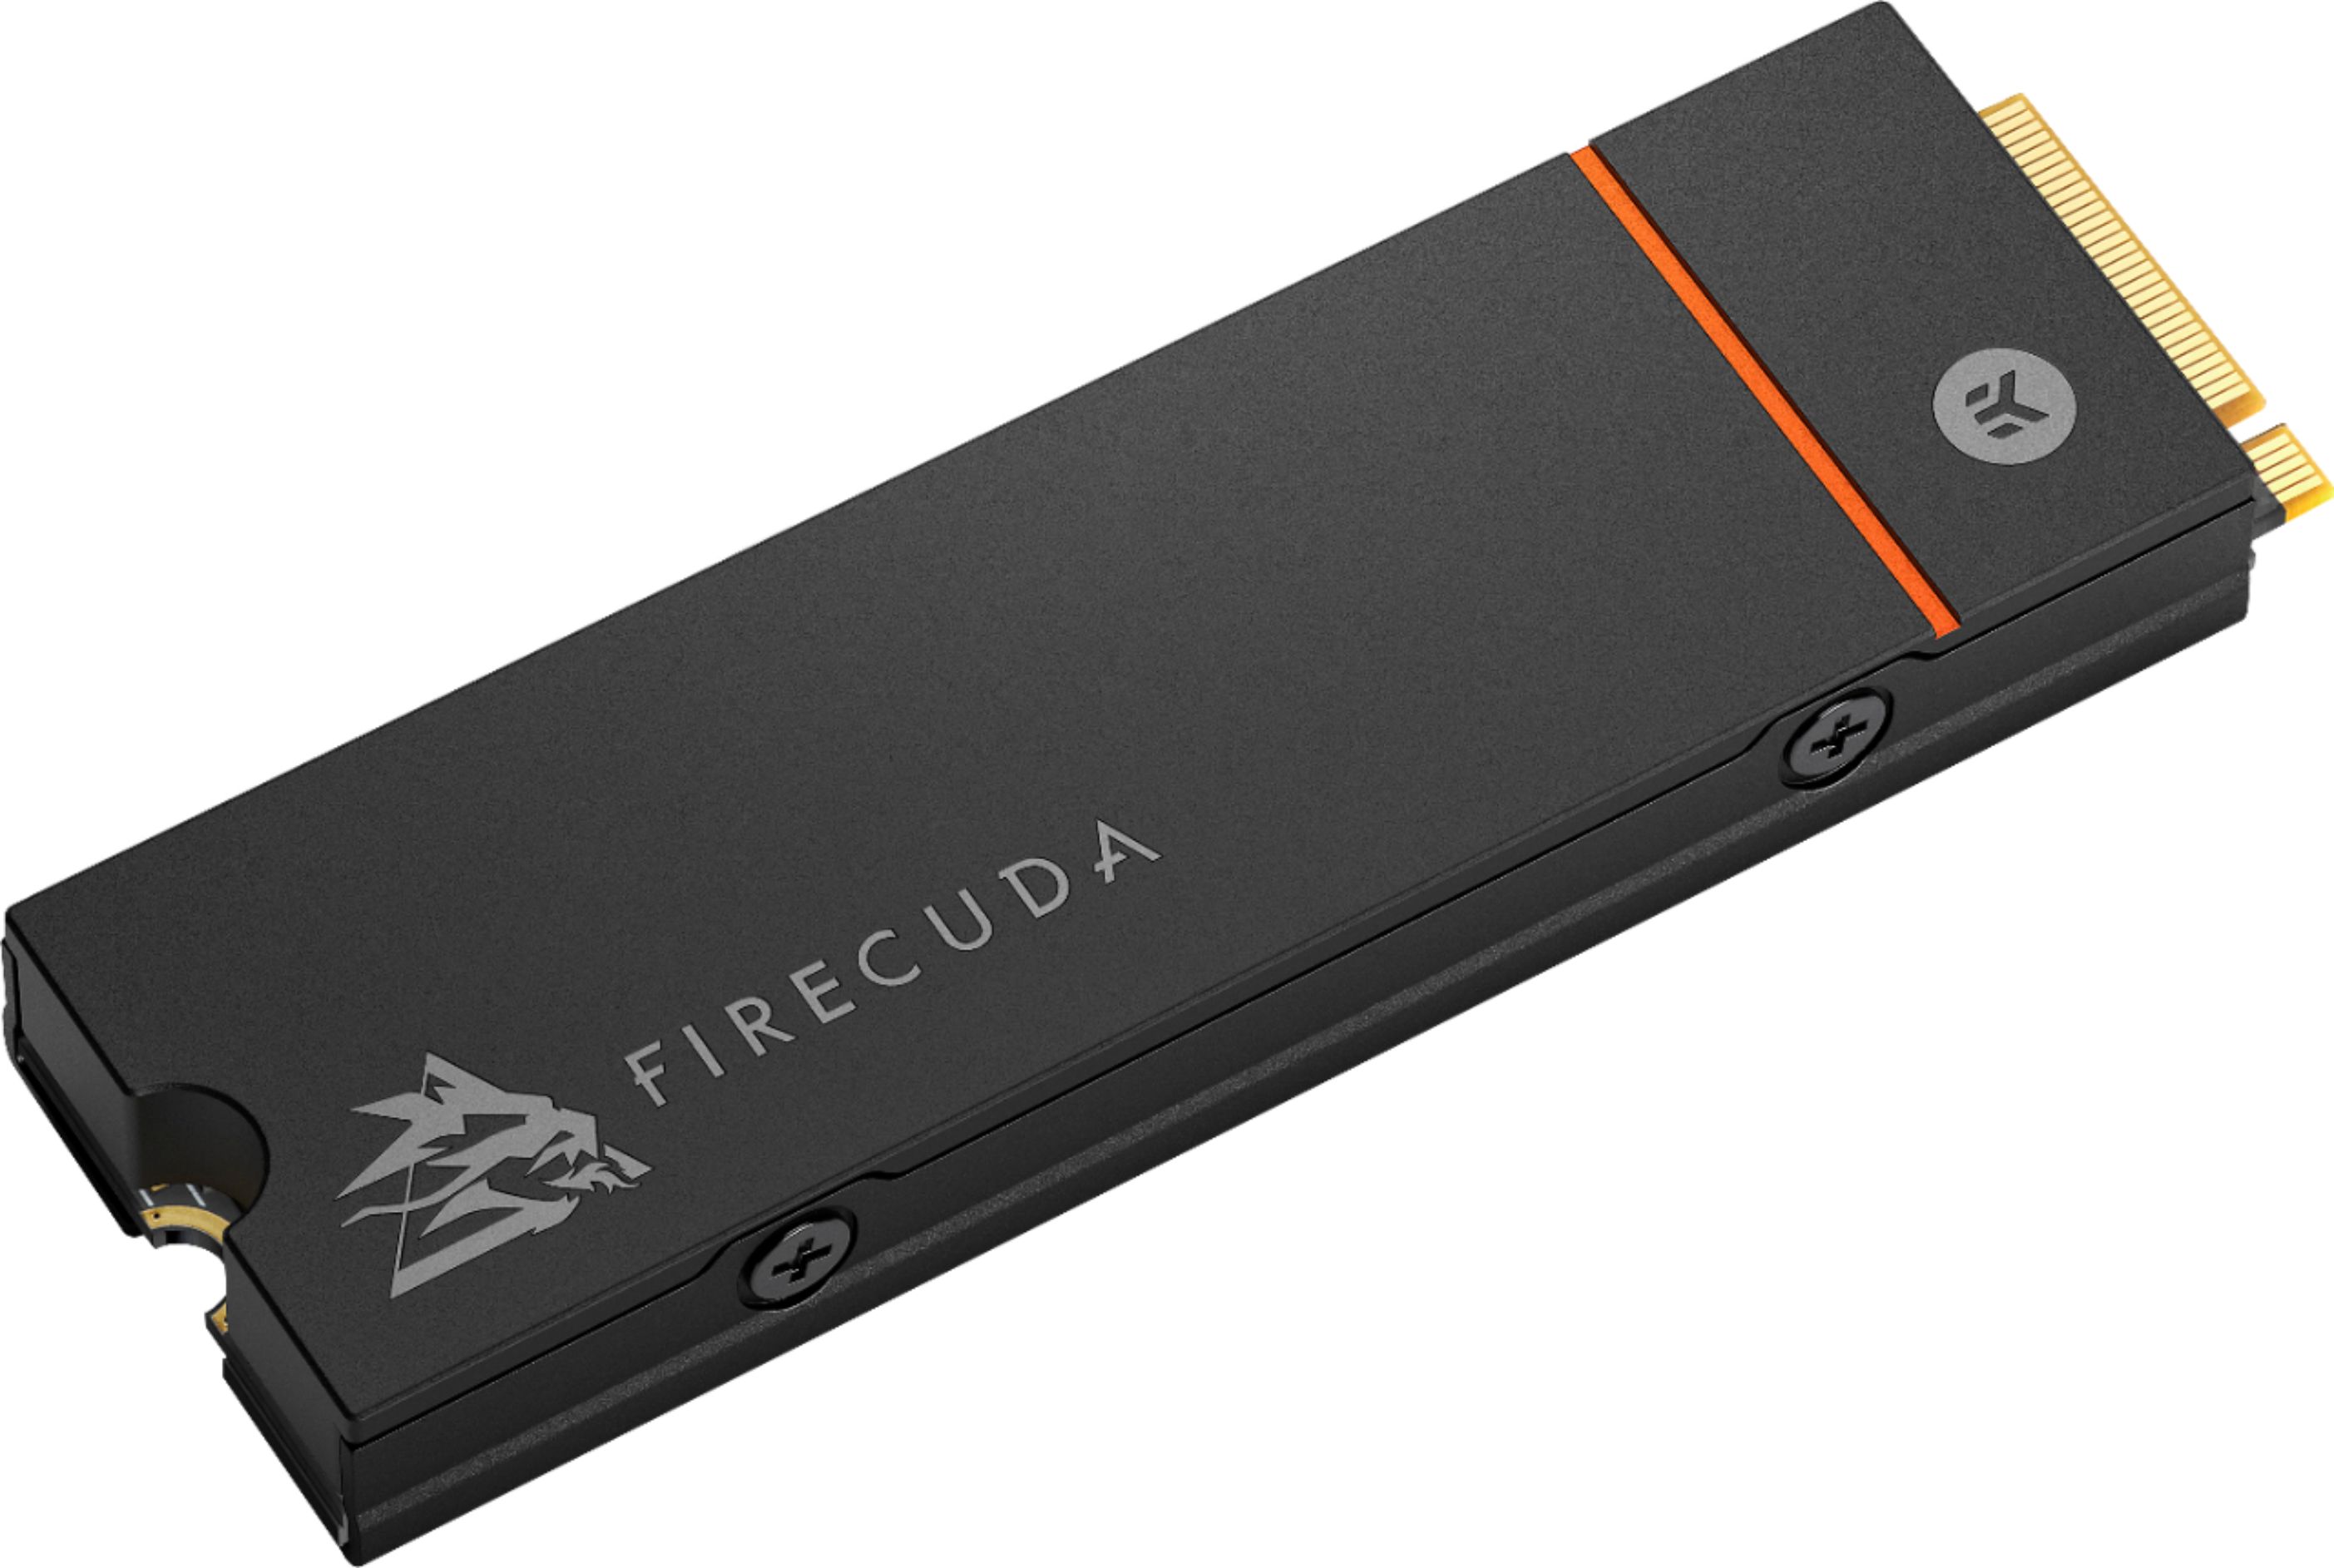 Seagate FireCuda  2TB  SSD ZP2000GM3A023